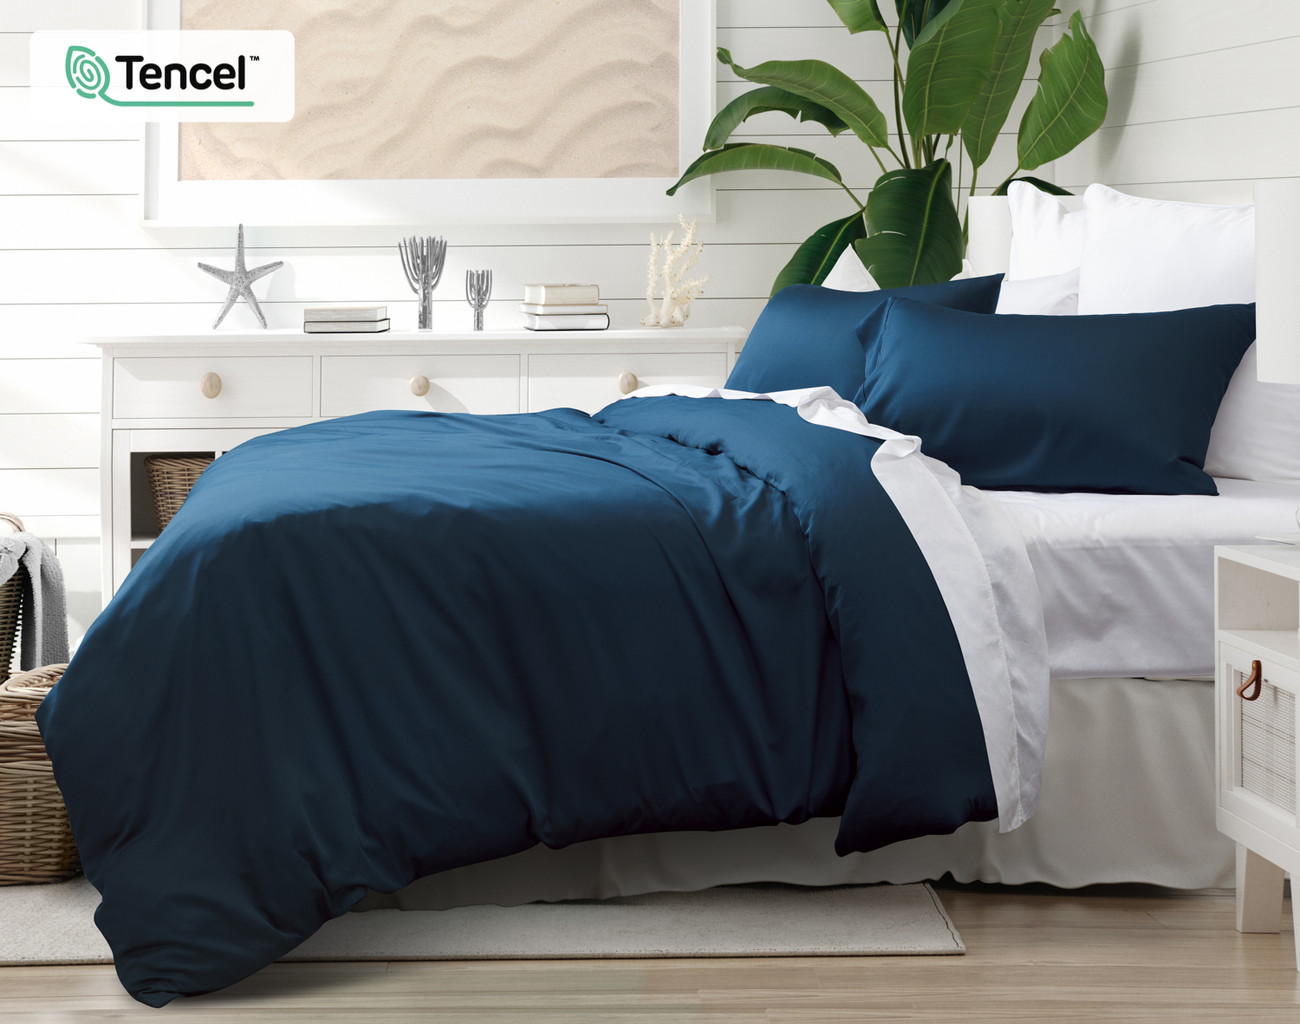 BeechBliss TENCEL™ Modal Duvet Cover - Seaport Blue